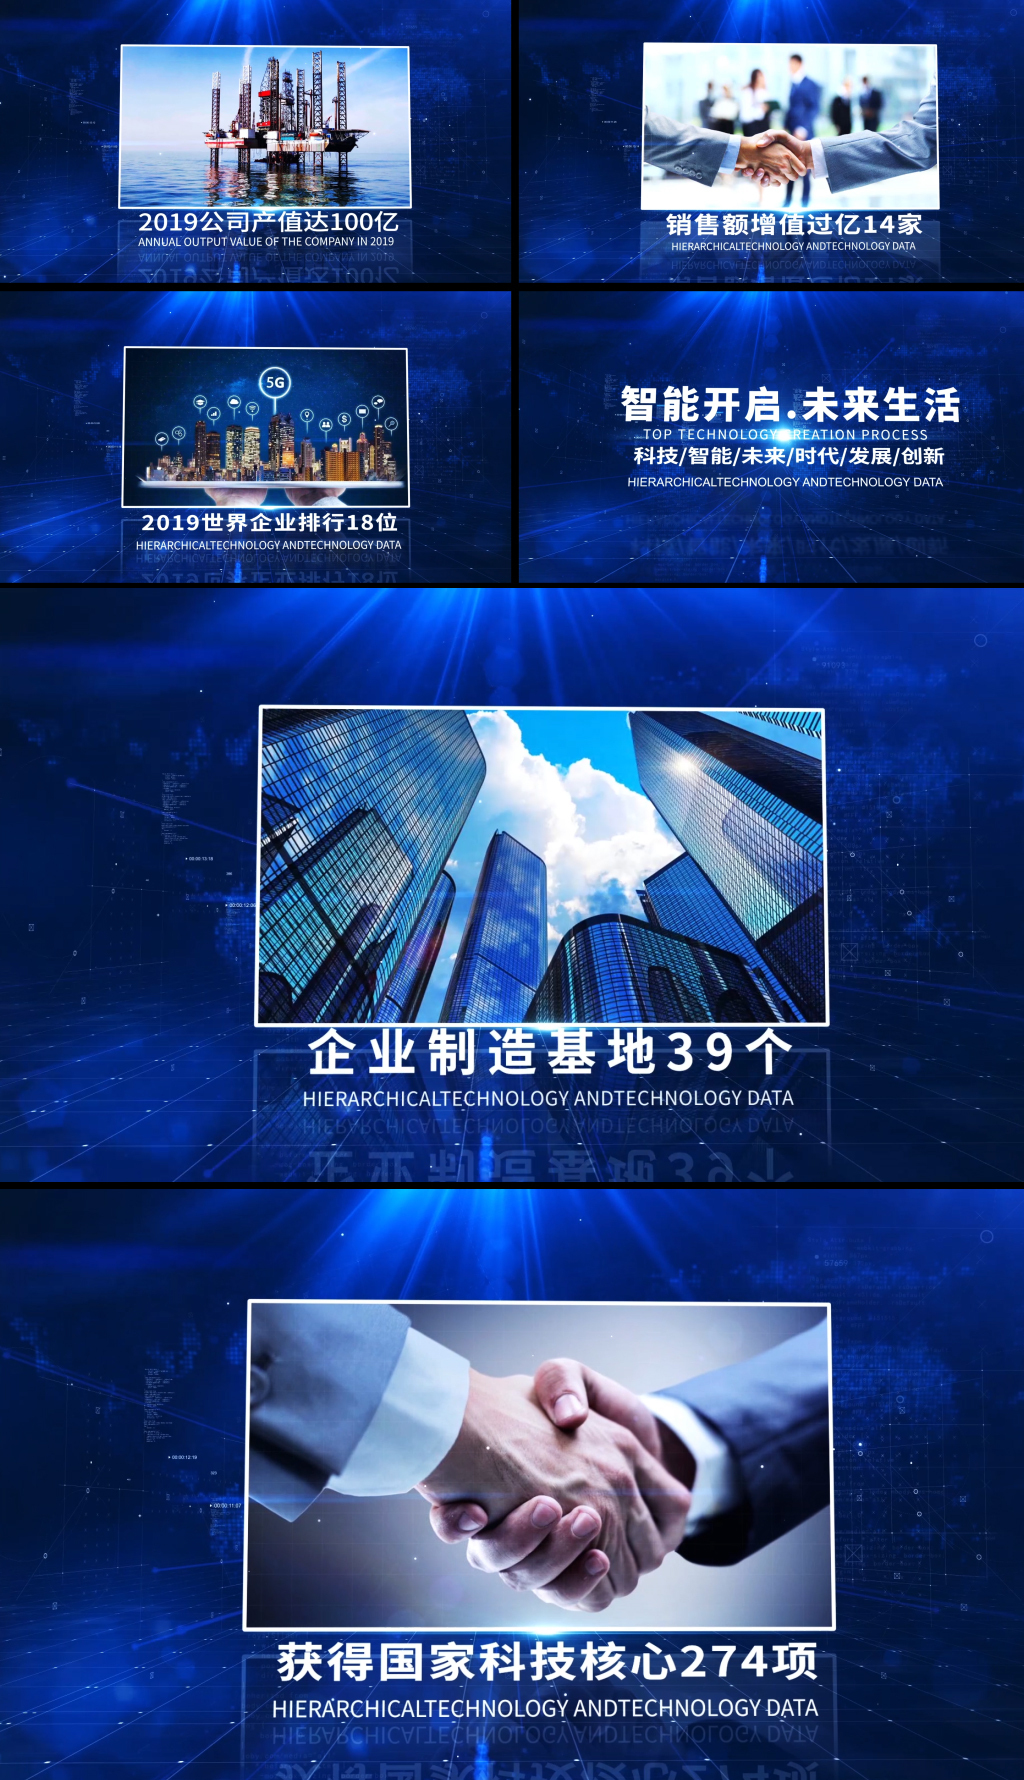 蓝色高端大气科技图文展示片头宣传AE模板